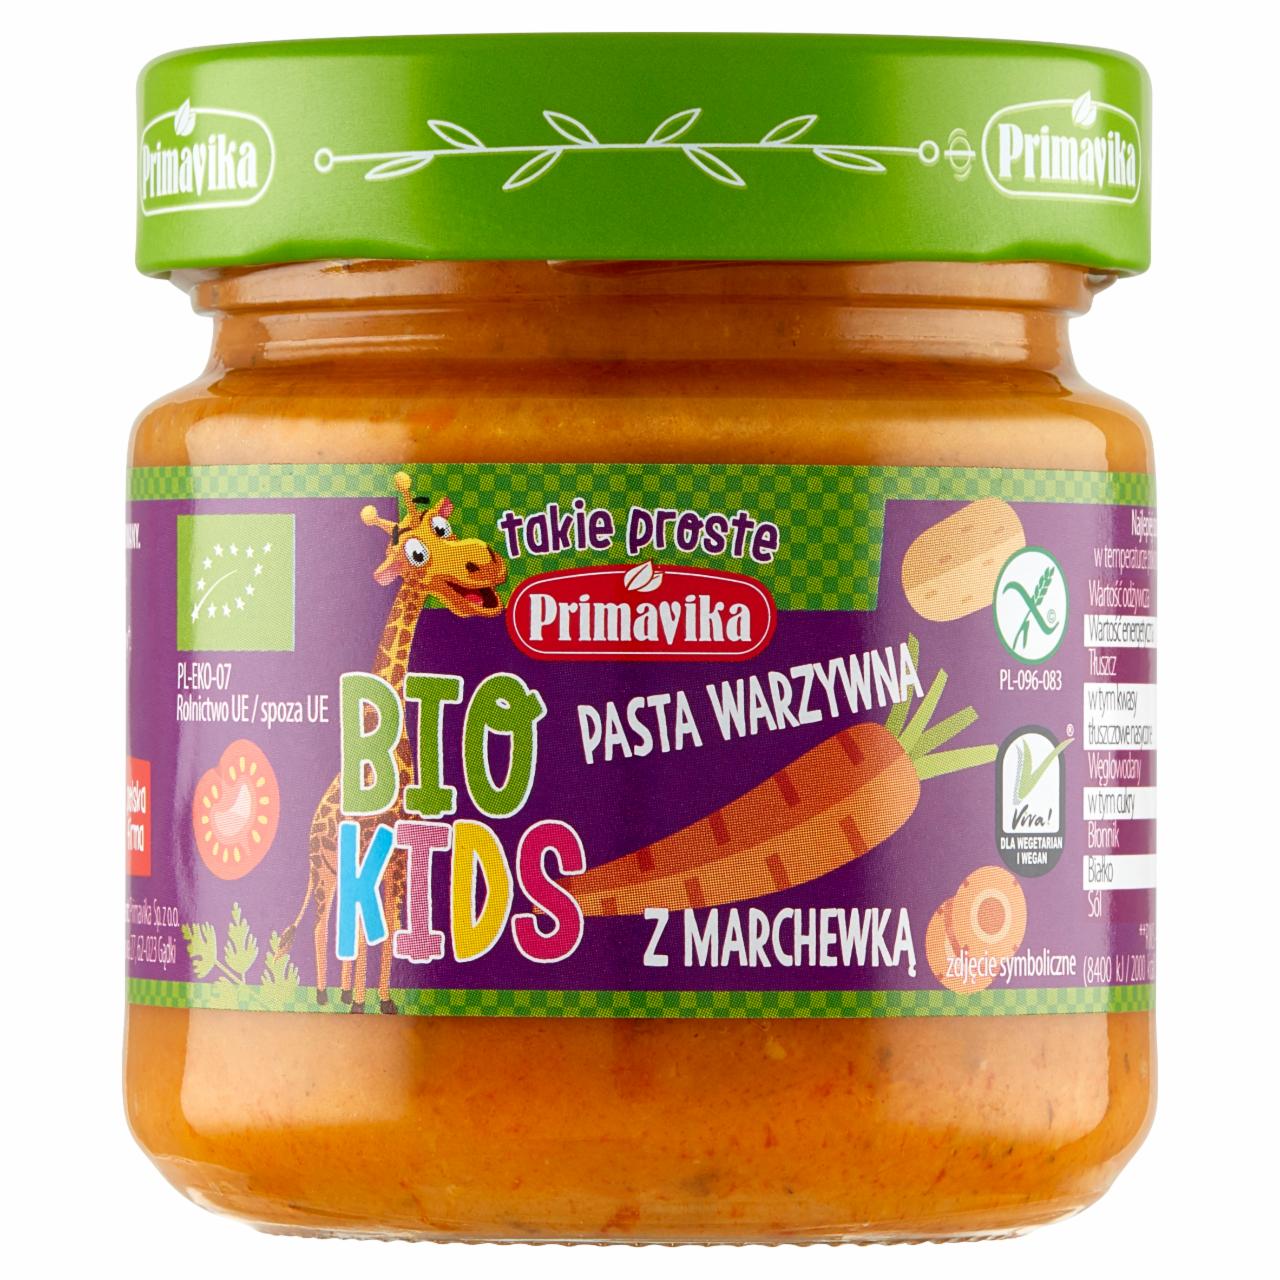 Zdjęcia - Primavika Bio Kids Pasta warzywna z marchewką 160 g